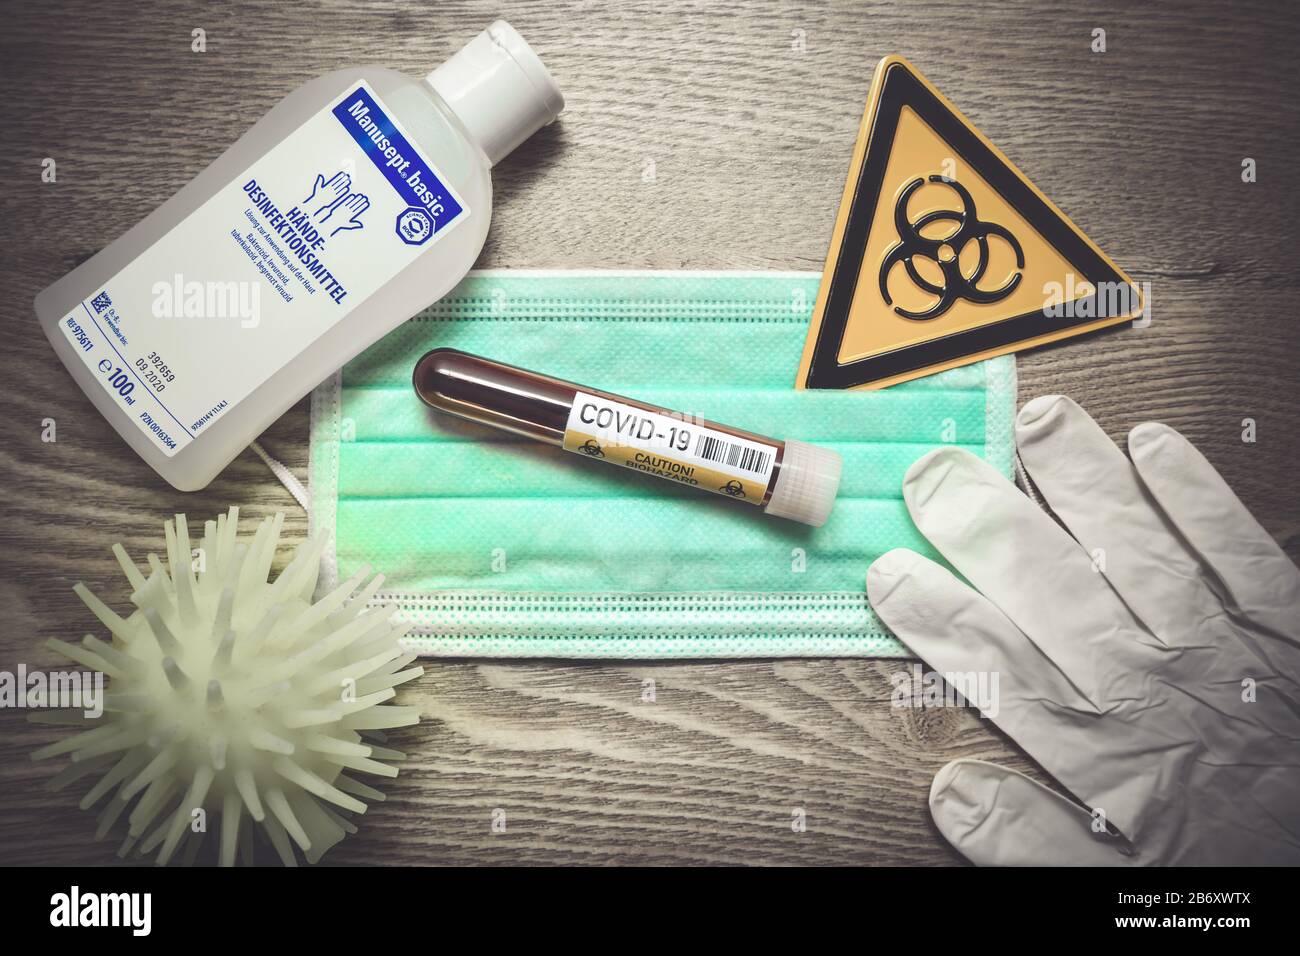 Mundschutz, Blutentnahmeroehrchen, Biogefaehrdungsschild, Schutzhandschuhe und Desinfektionsmittel auf einem Tisch, Symbolfoto Coronavirus Banque D'Images